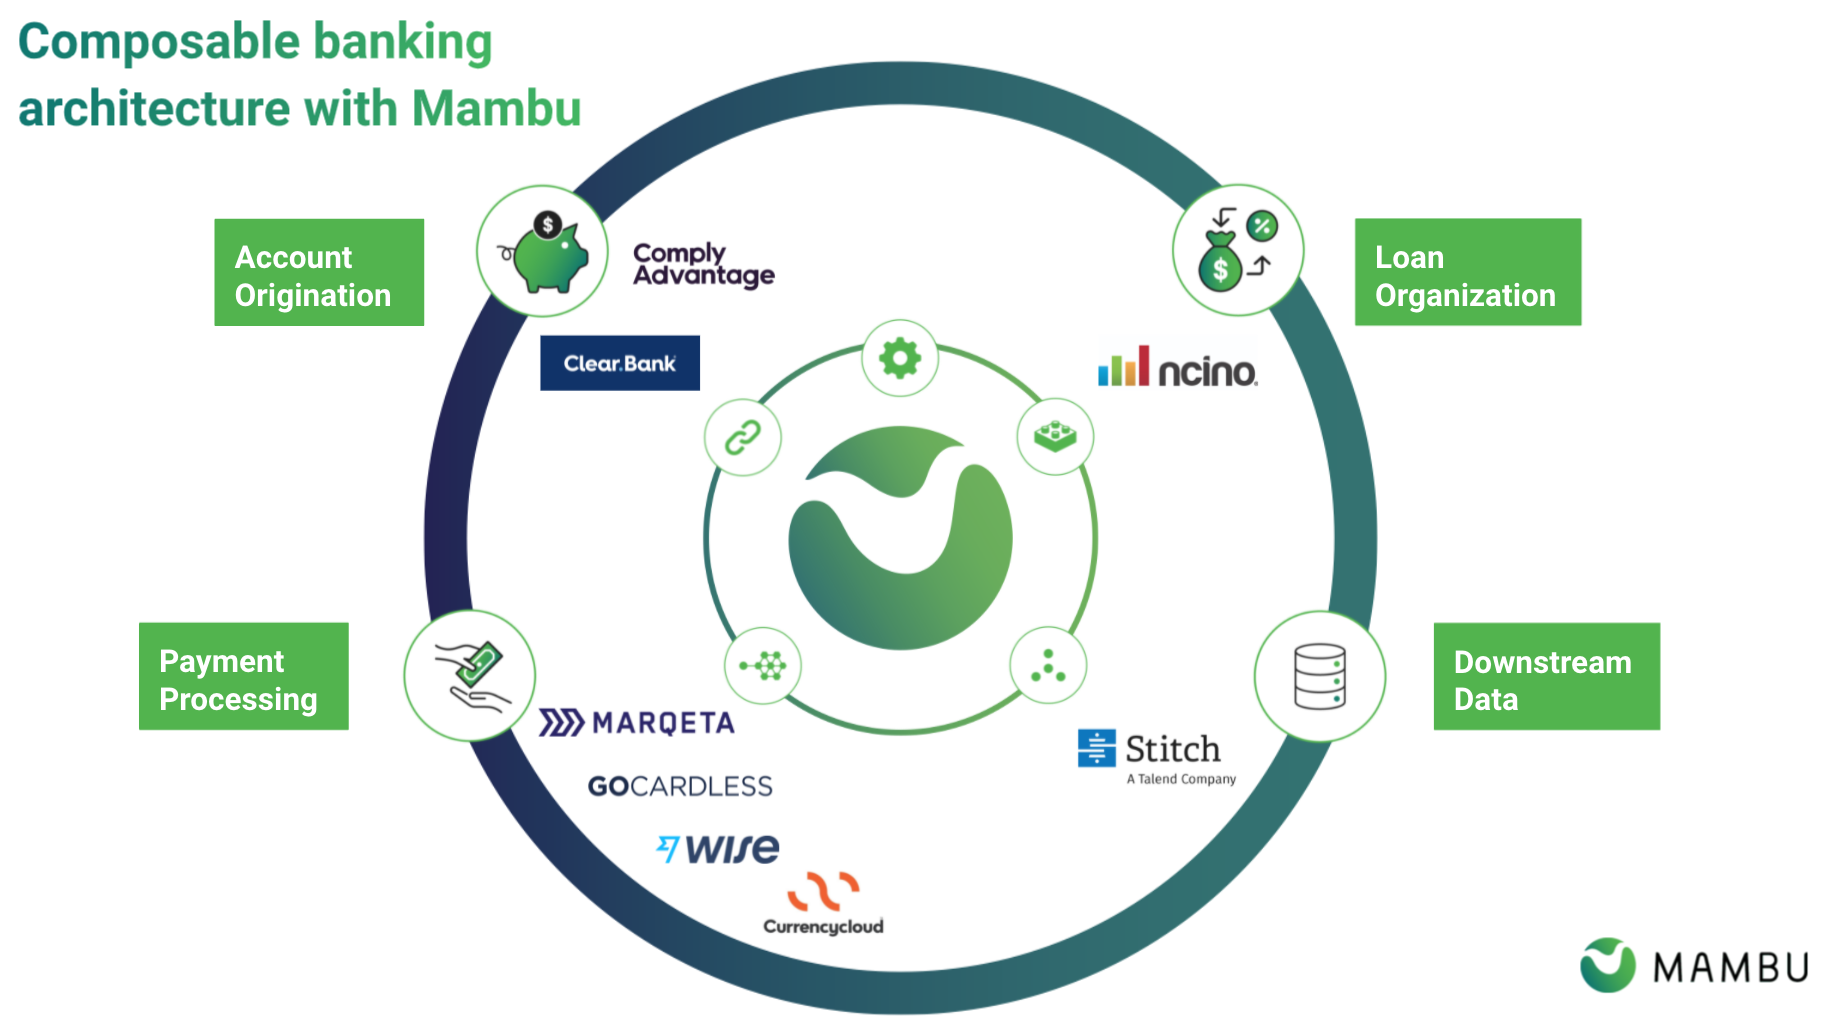 Mambu ecosystem partners